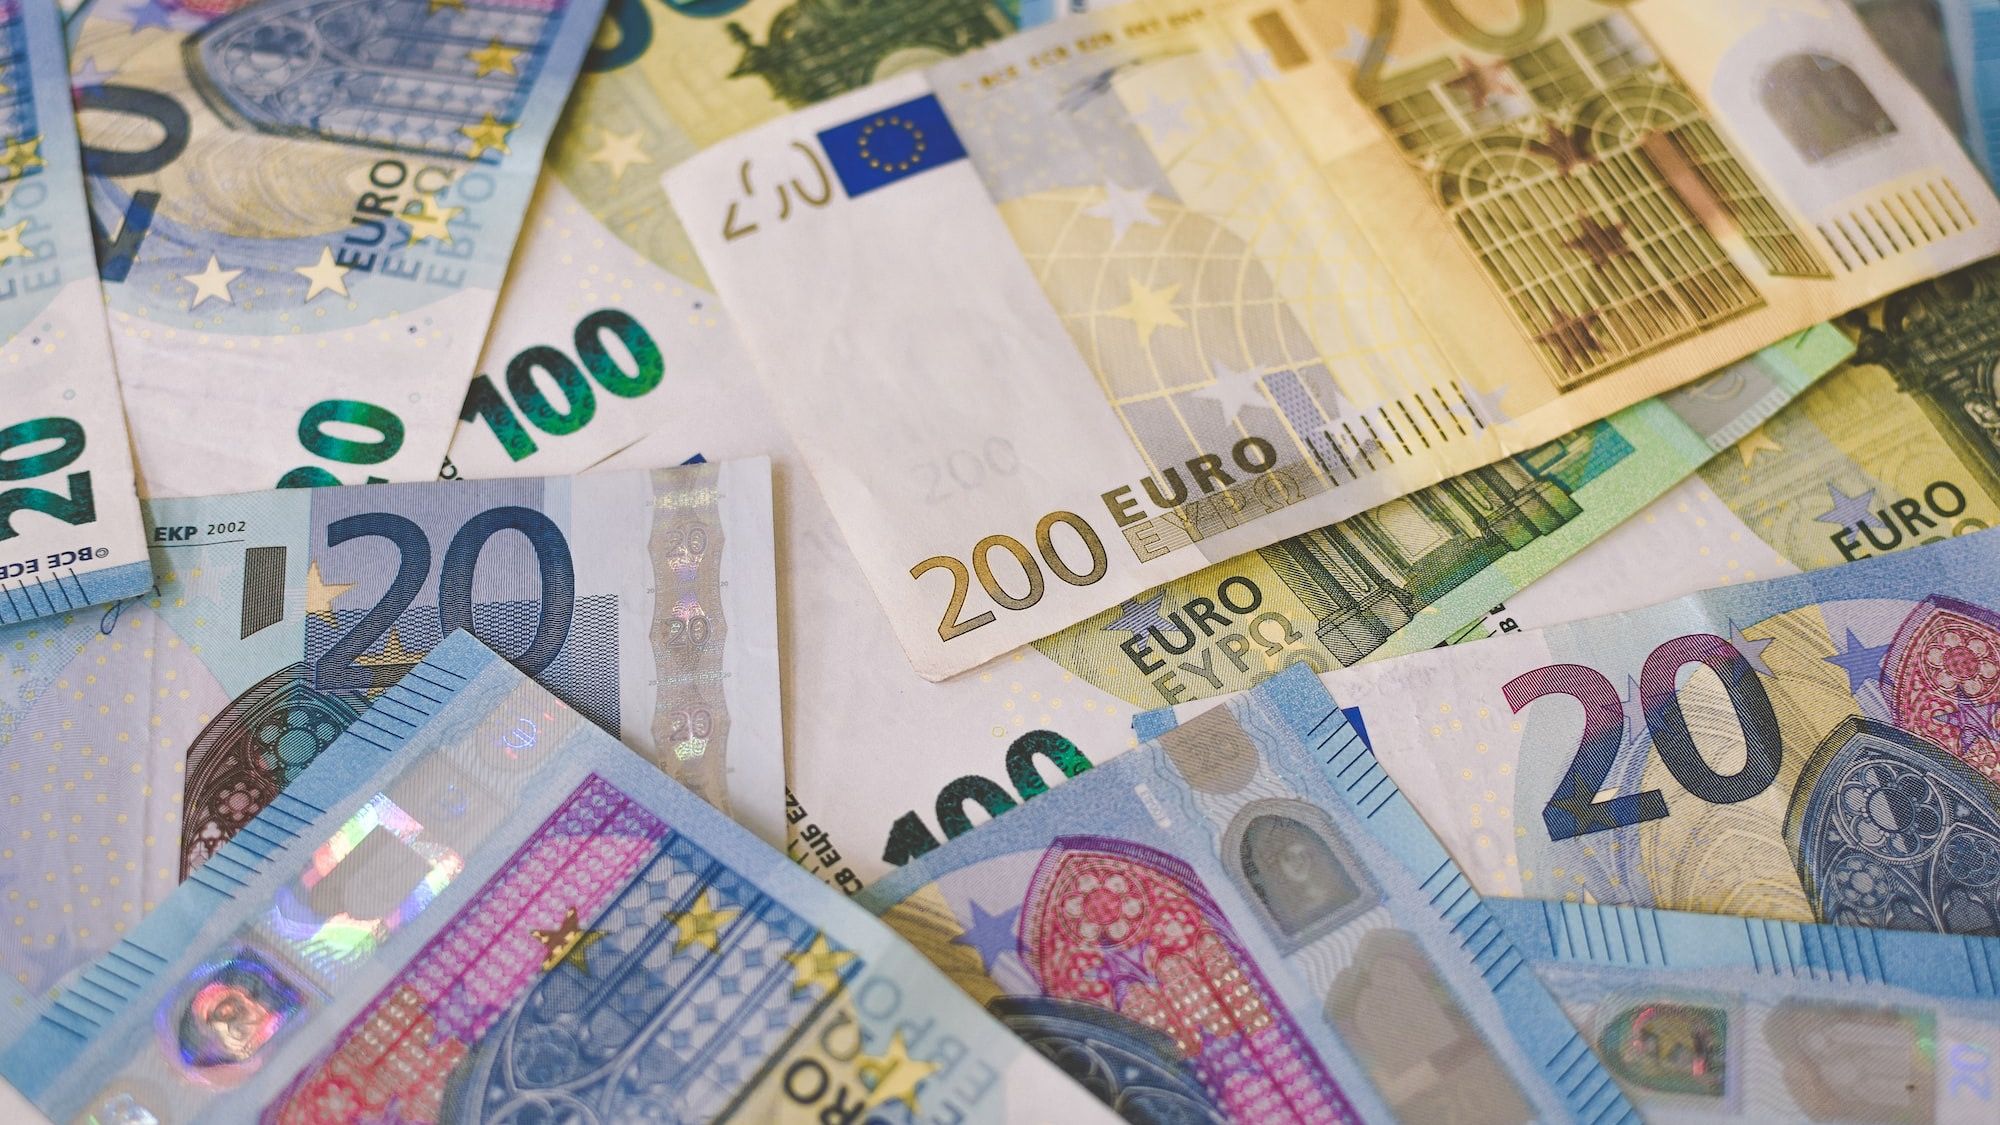 "Финка банк" с 20 сентября ограничит платежи в евро за пределы Европы